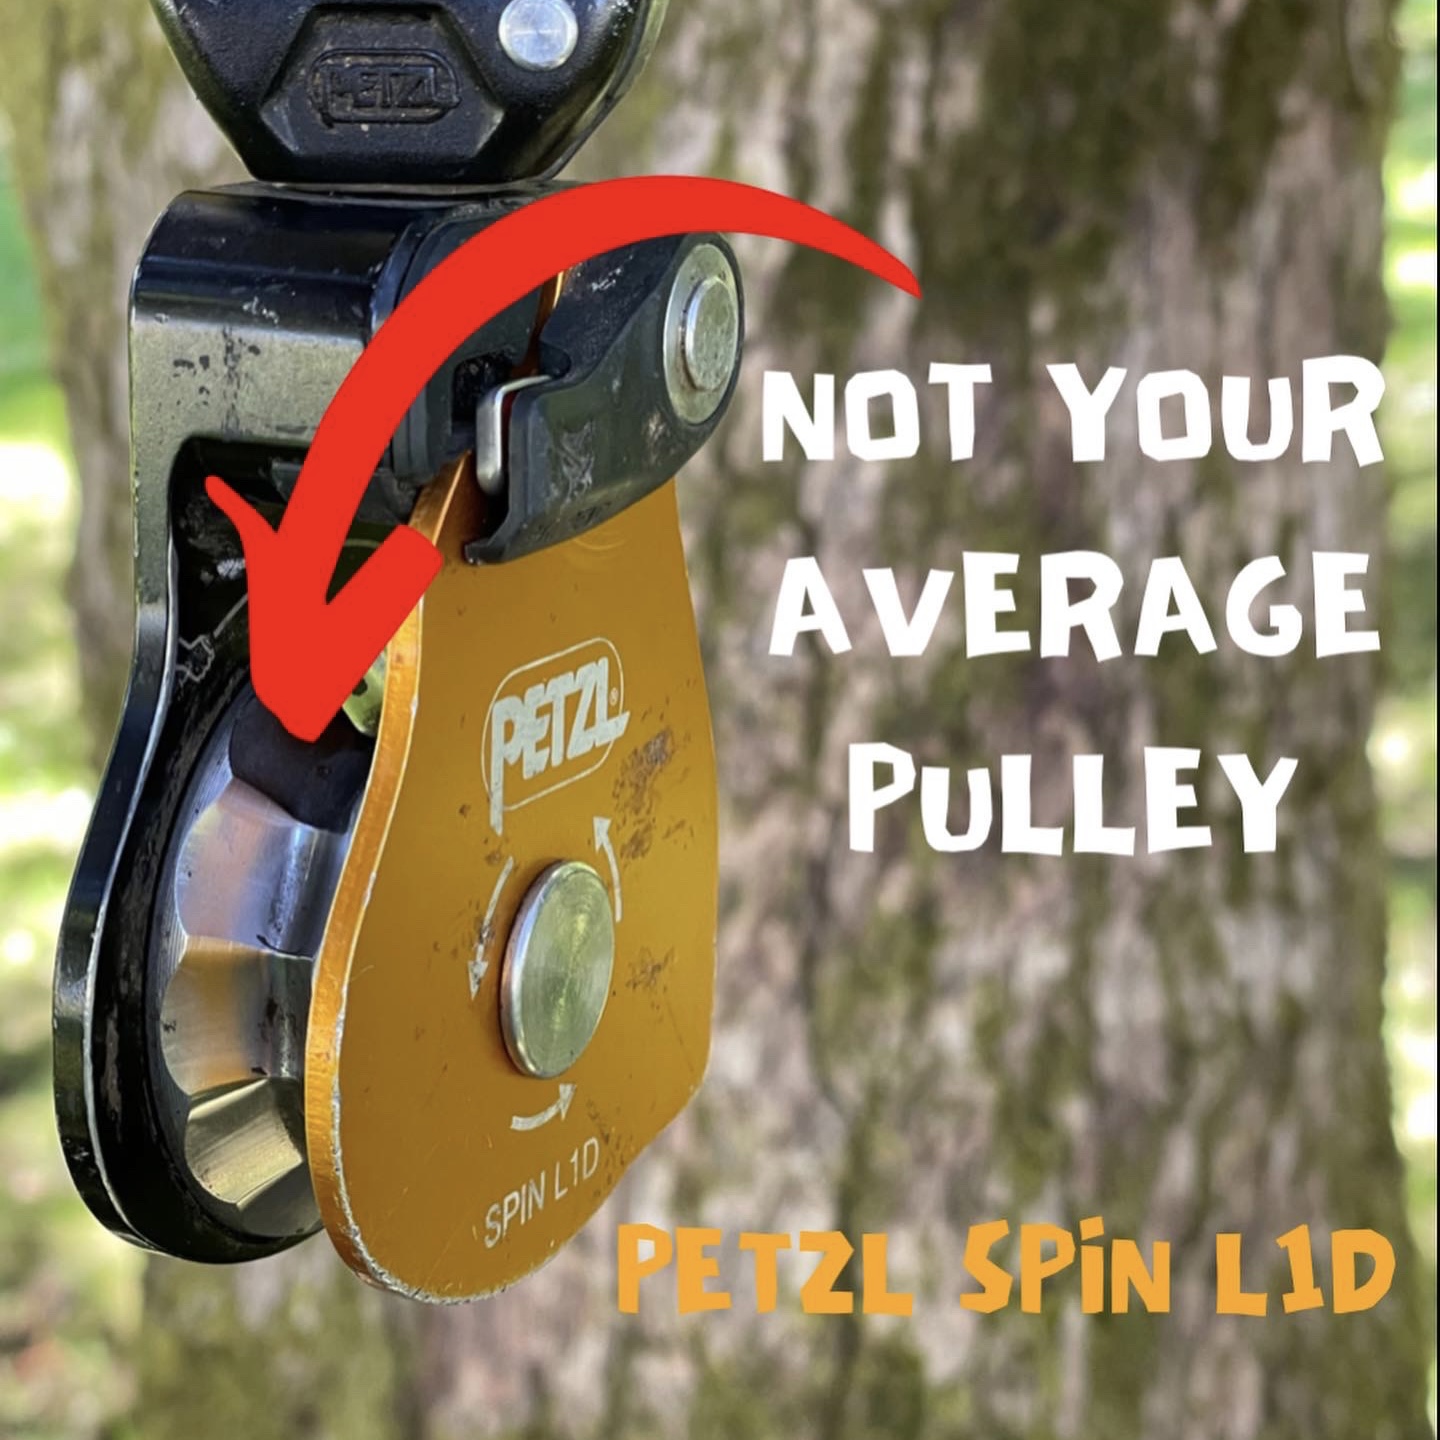 Petzl Spin L1D pulley ClimbingArborist.com